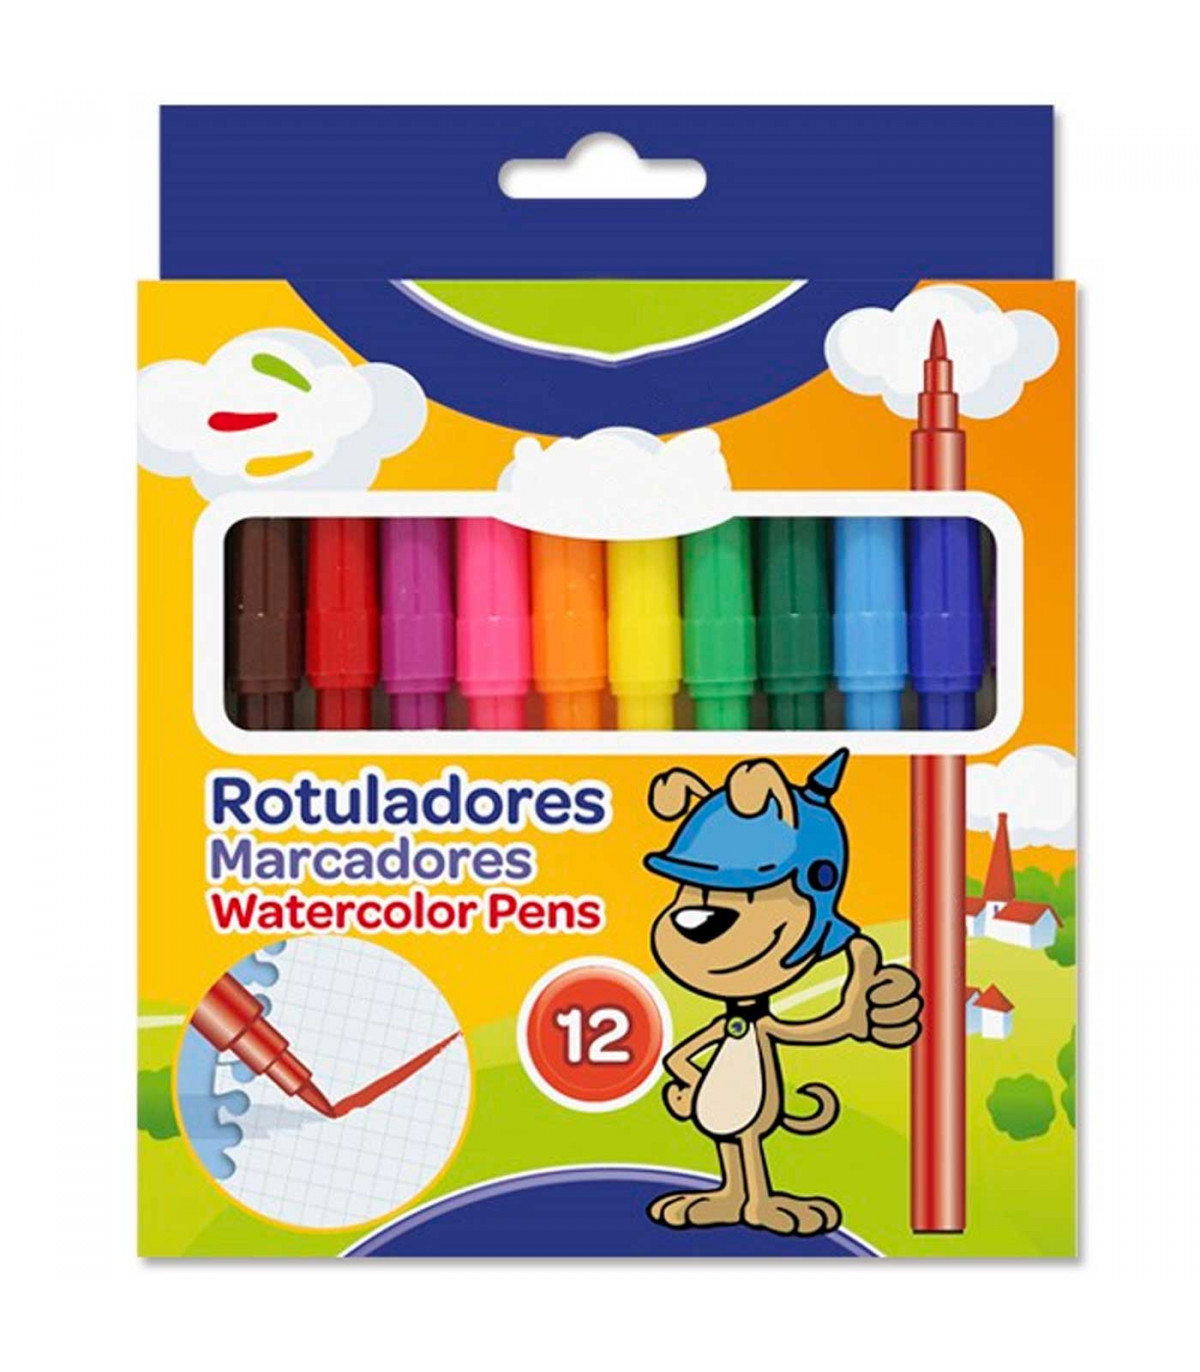 https://tradineur.com/62696-superlarge_default/tradineur--caja-de-12-rotuladores-finos-de-colores-para-ninos-marcadores-con-punta-resistente-material-escolar-colores-vivos-sur.jpg